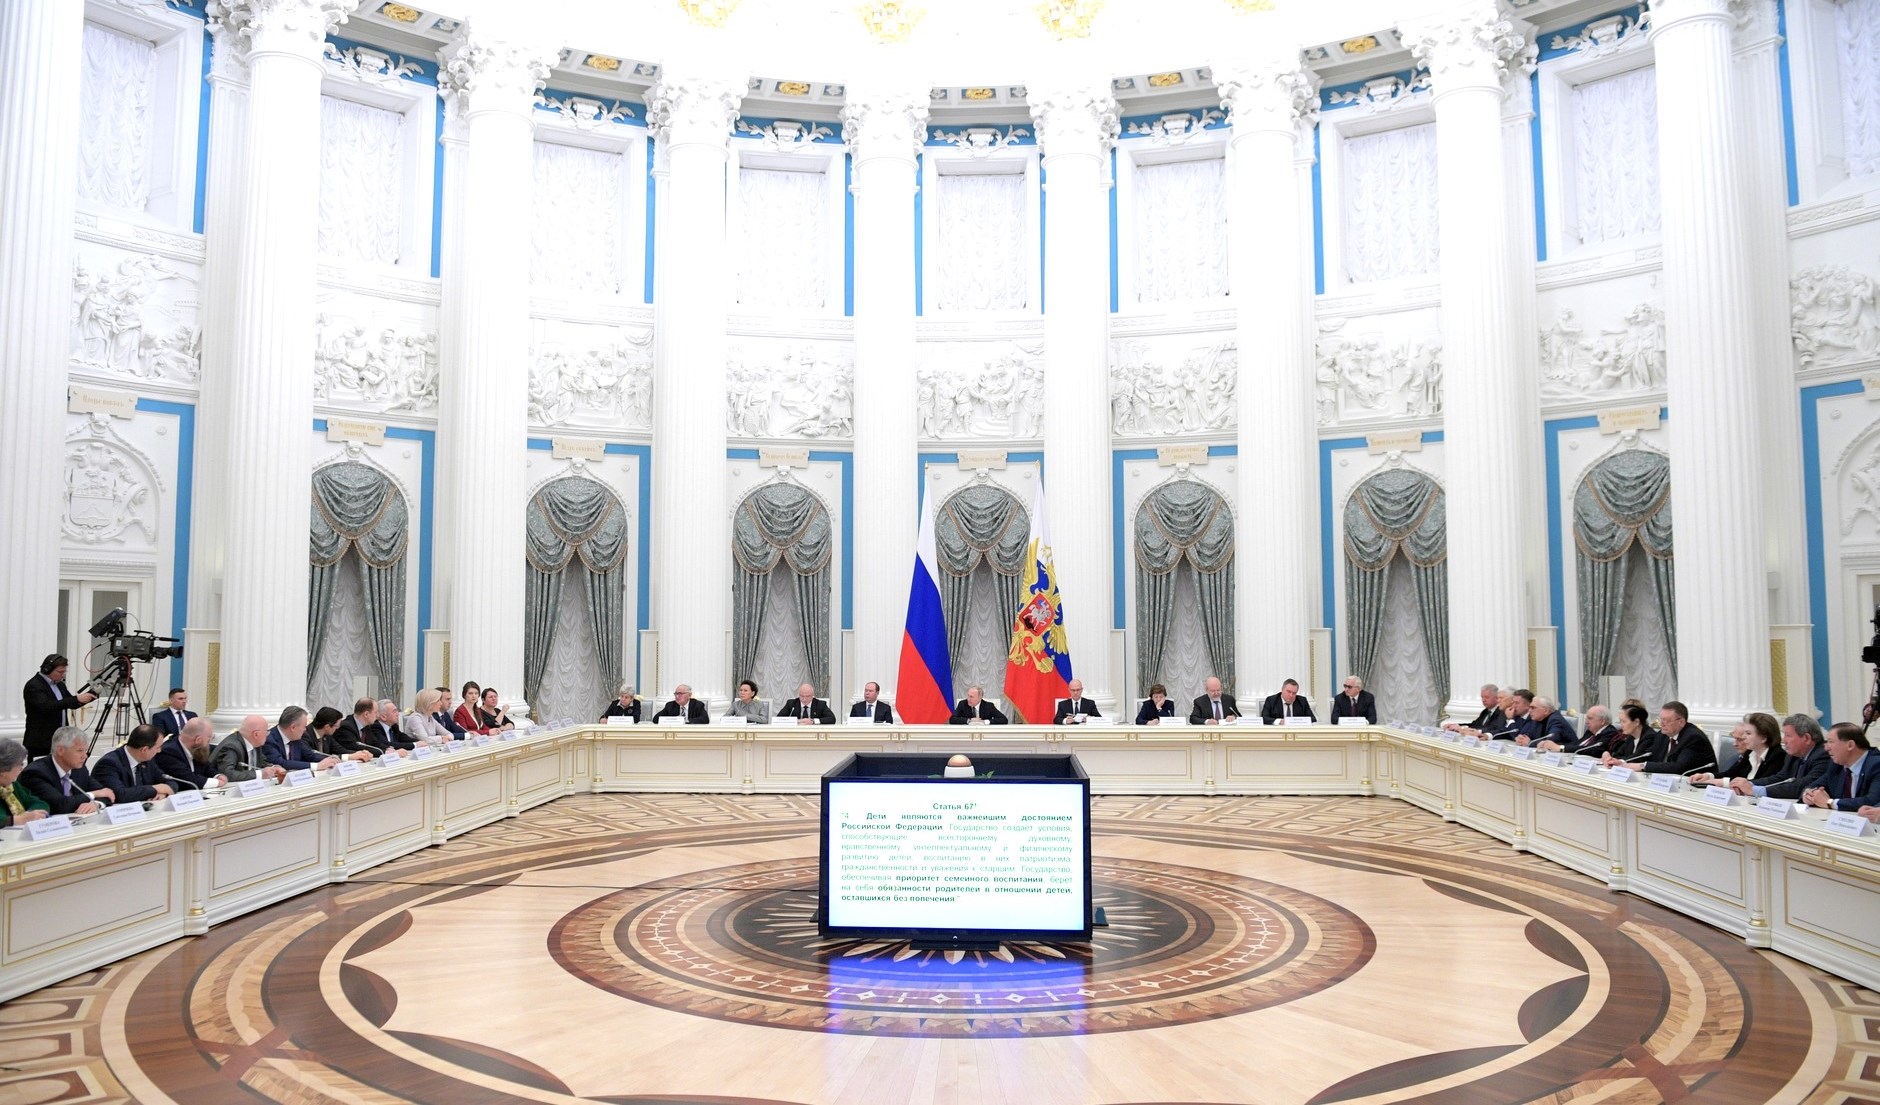 Владимир Путин: «Сложение положительных качеств каждого народа, населяющего Россию, дает исключительно мультипликативный эффект и укрепляет нашу страну»